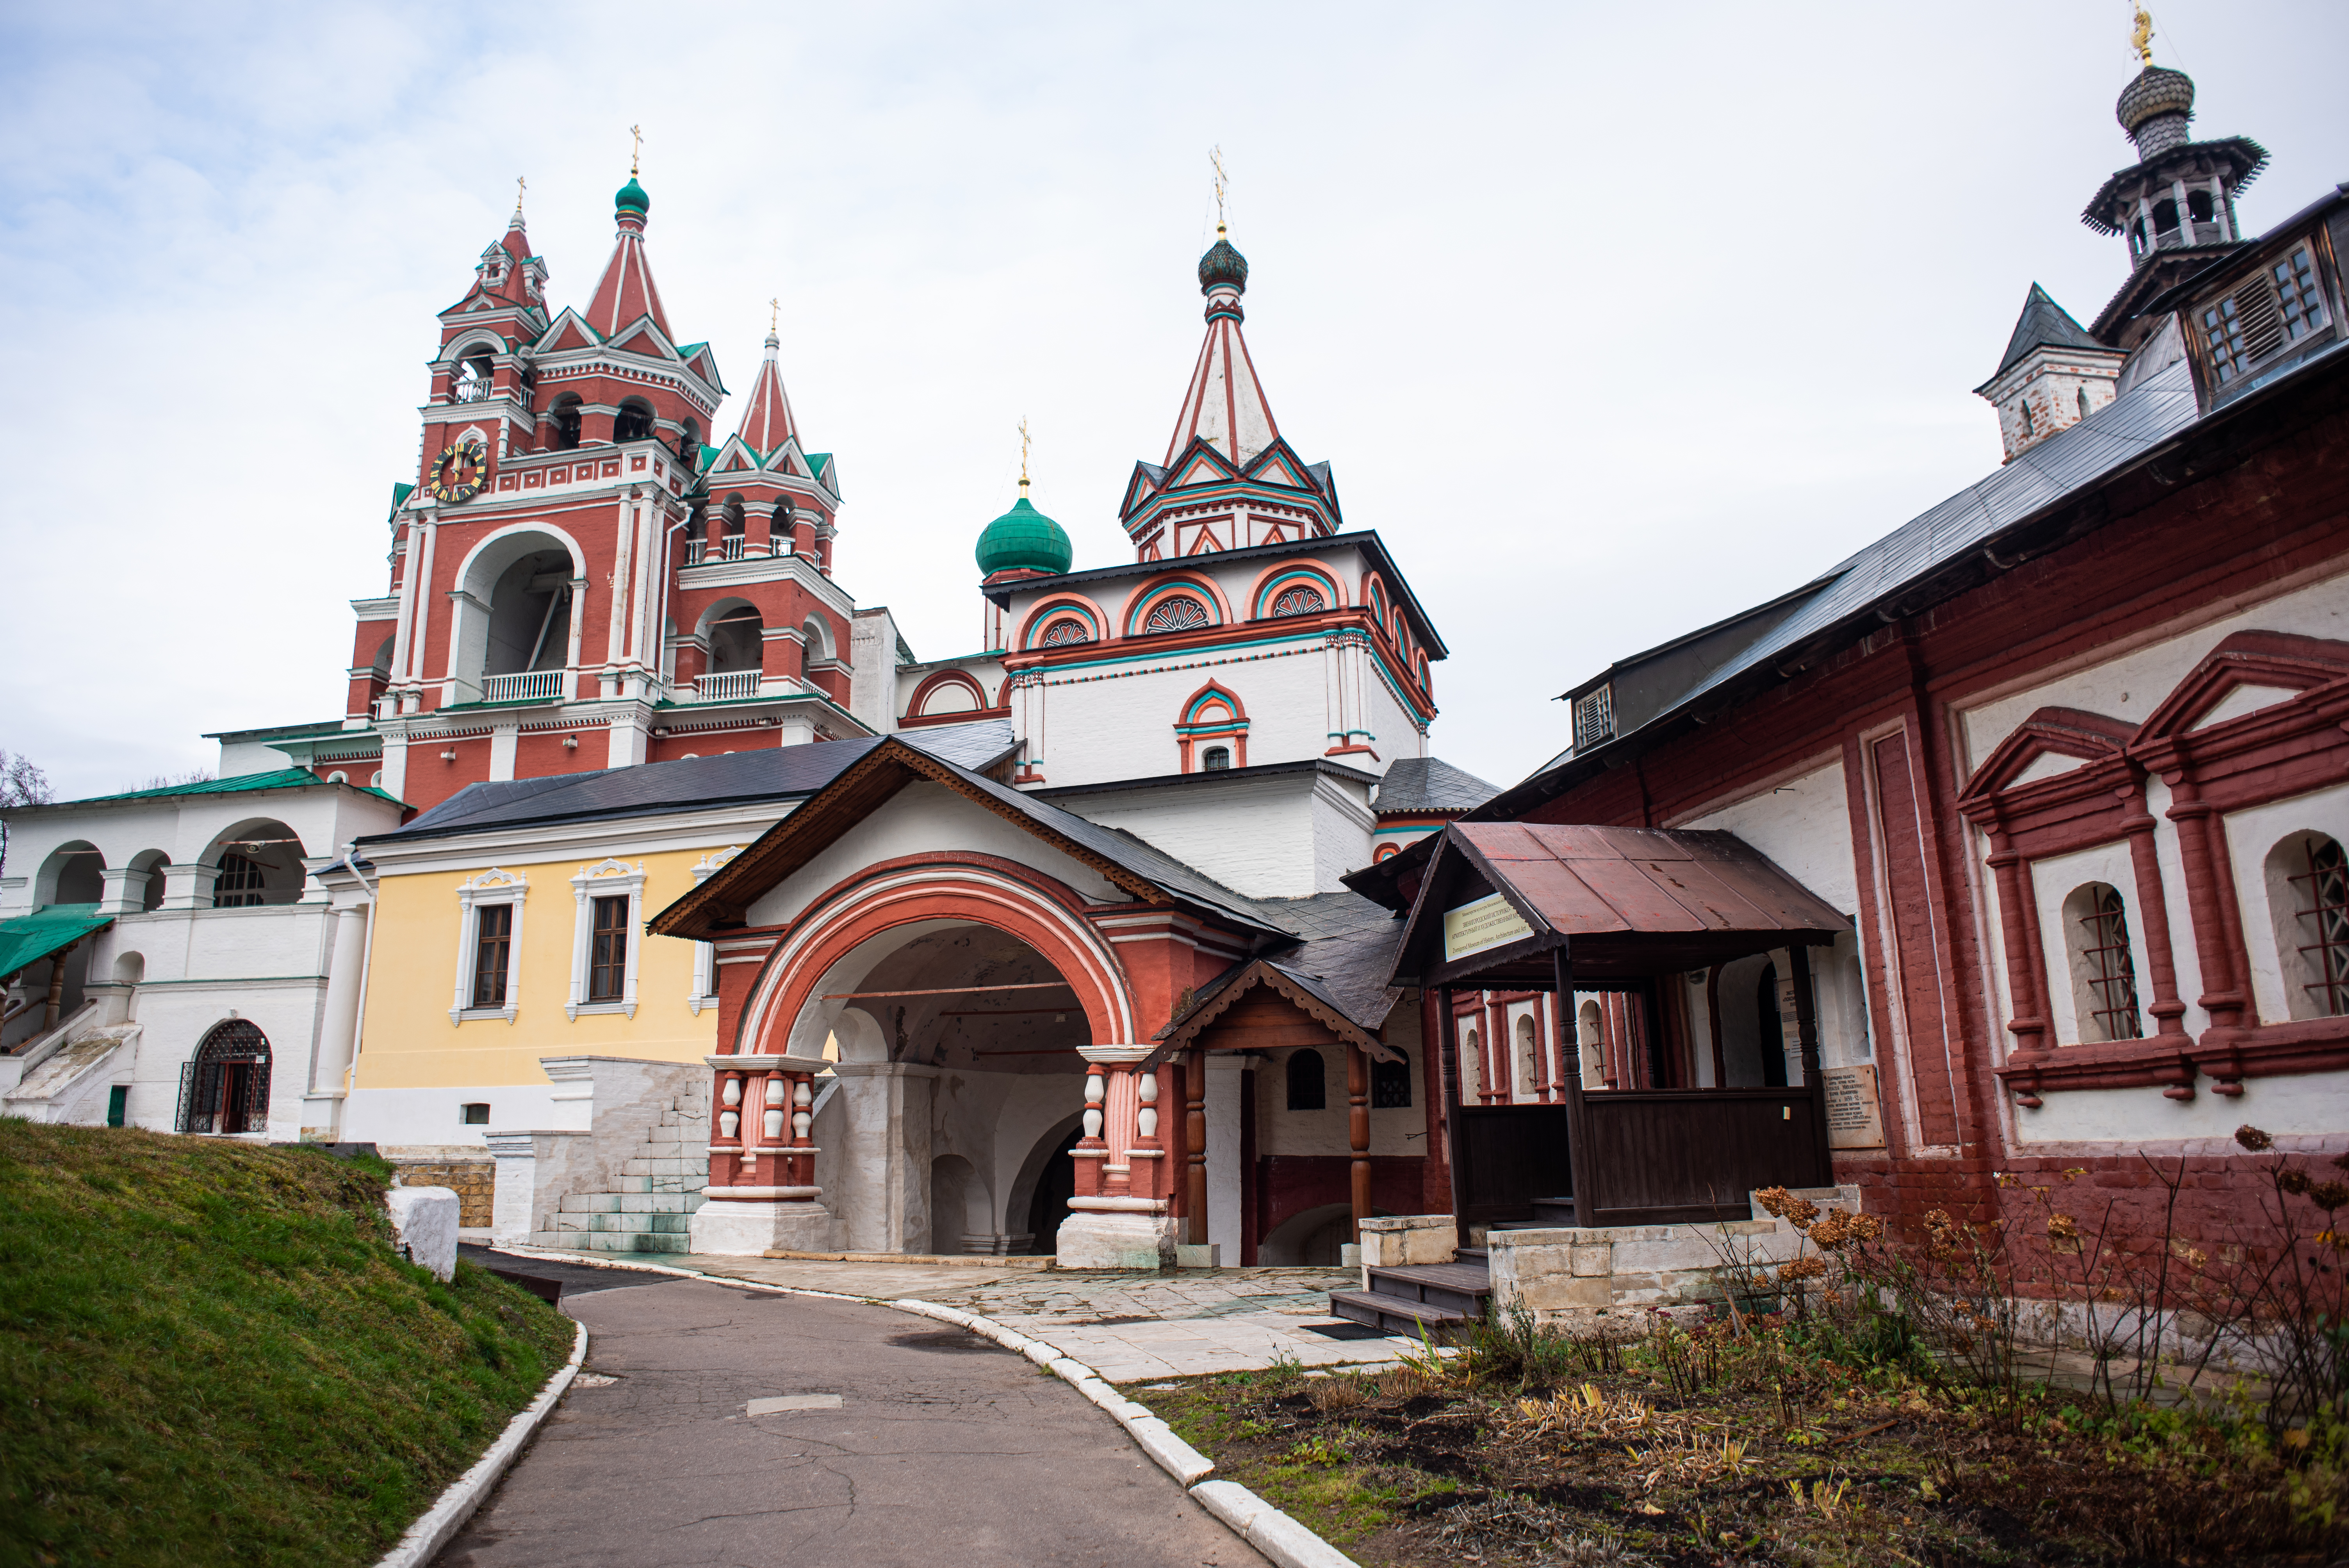 Монастырь является самой знаковой достопримечательностью древнего города Звенигорода